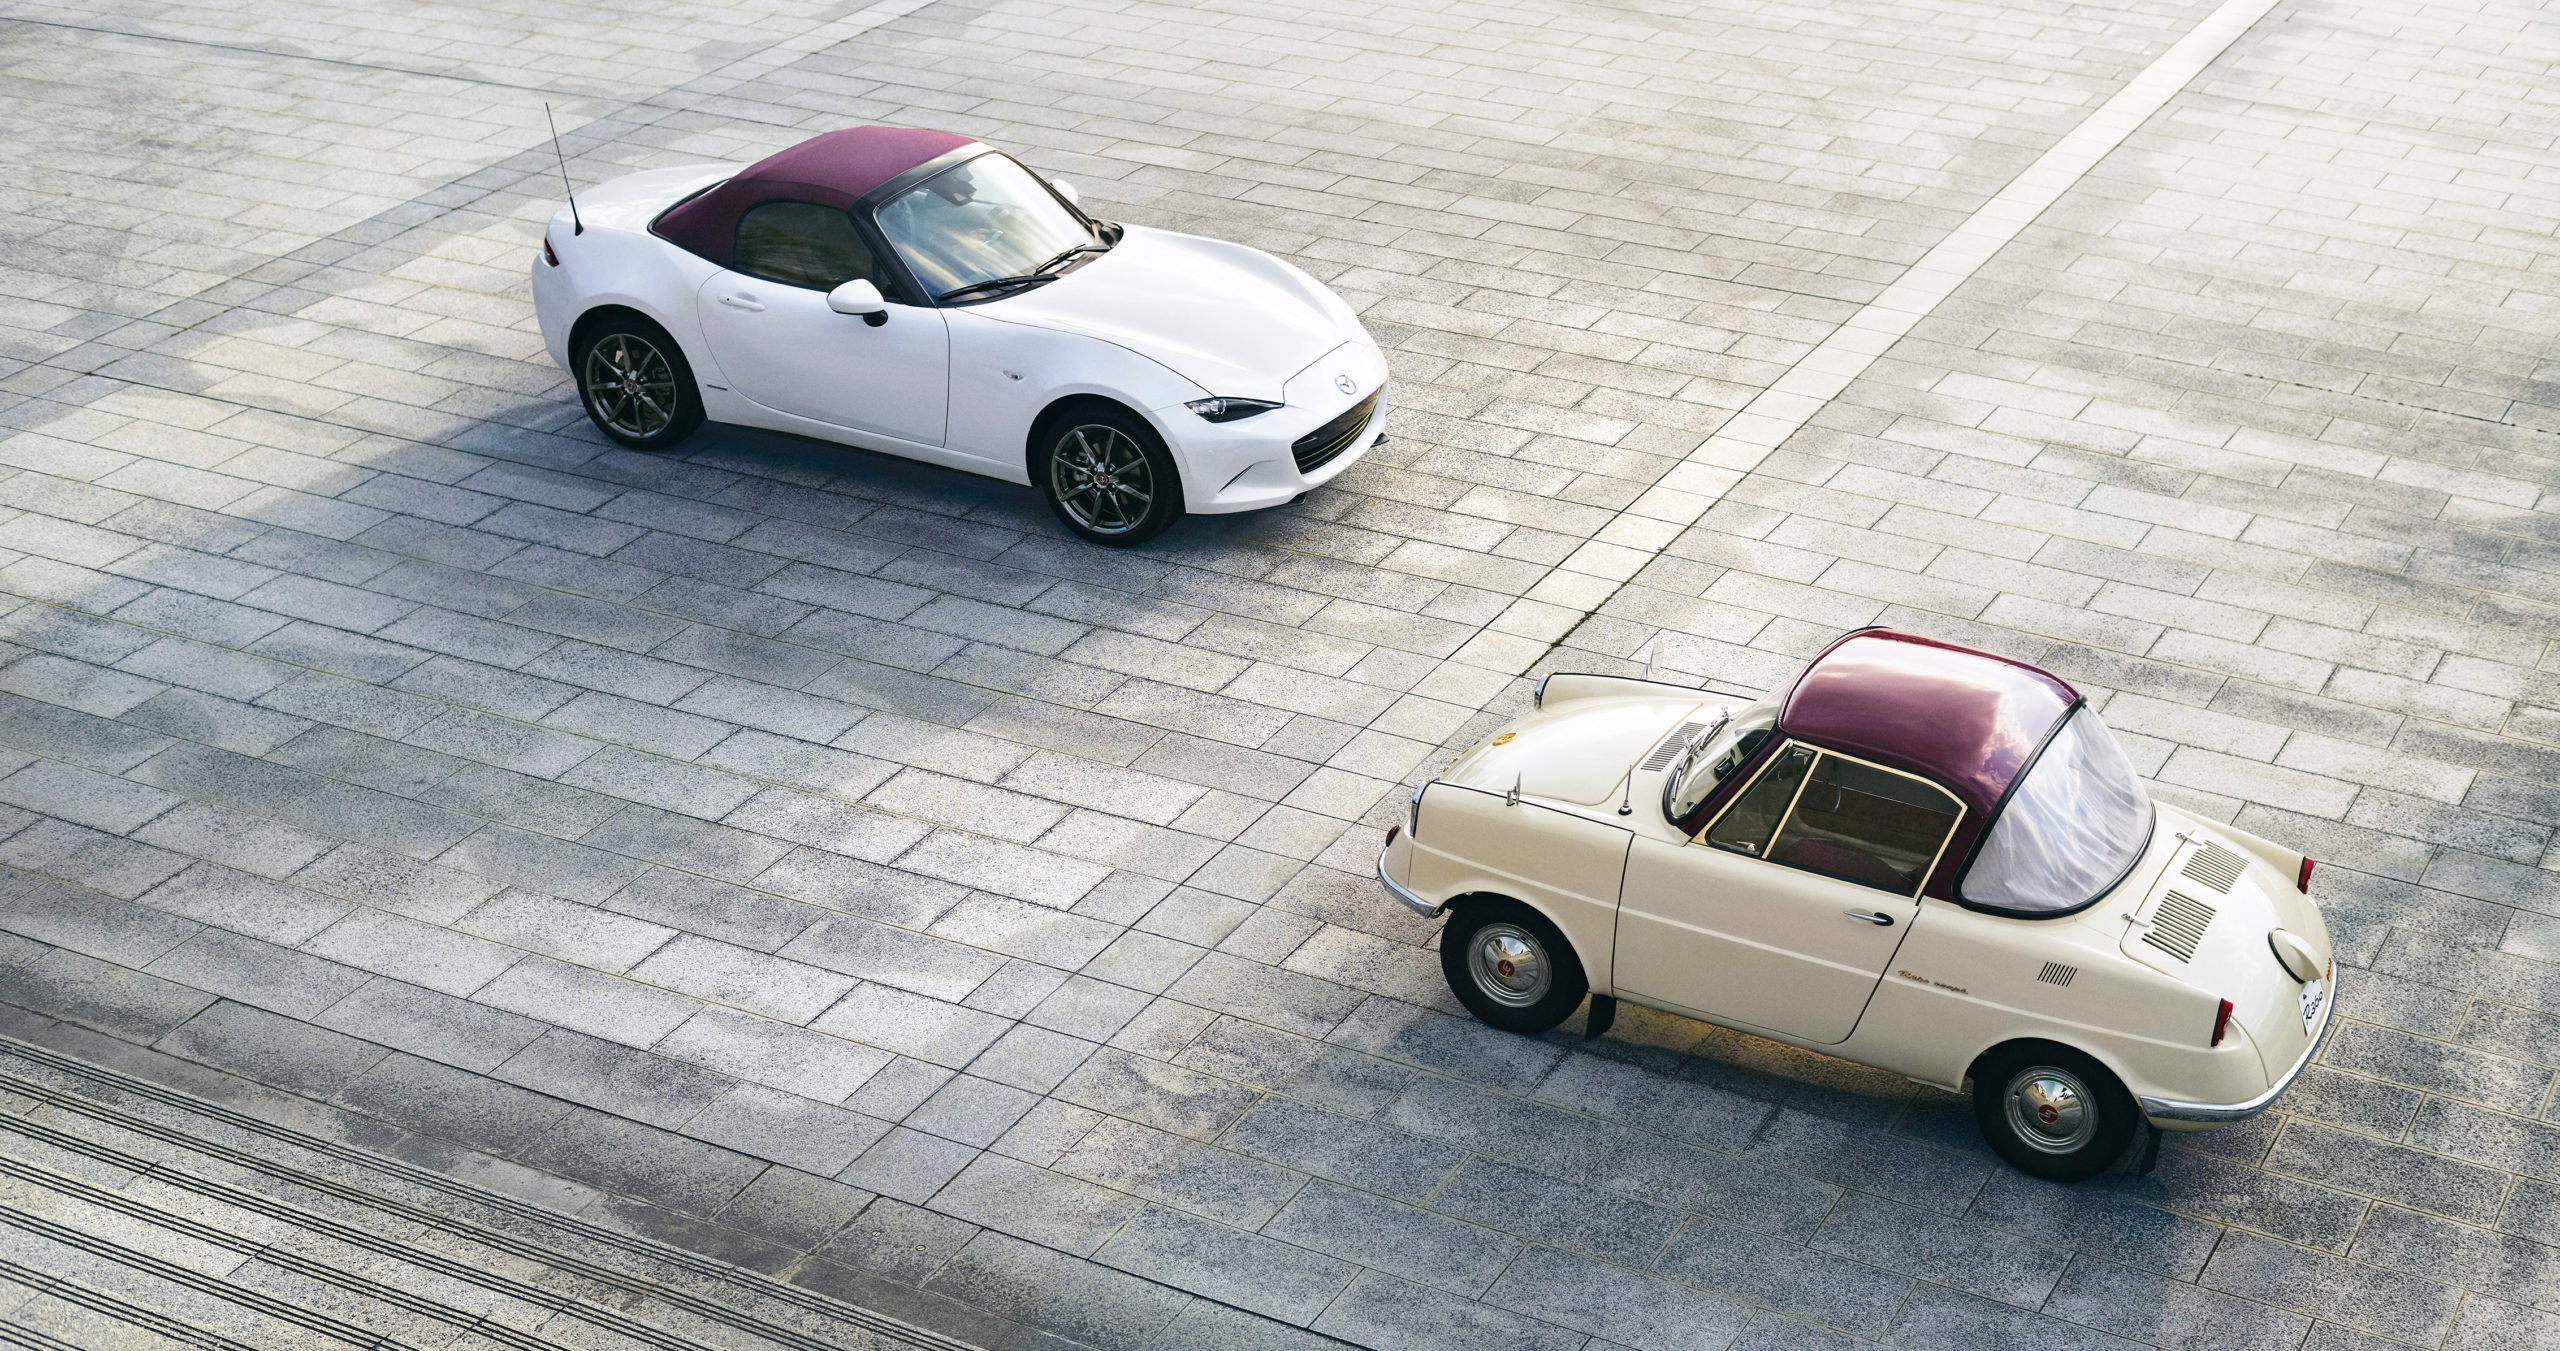 100th Anniversary Mazda MX-5 Miata Coming to U.S. | THE SHOP